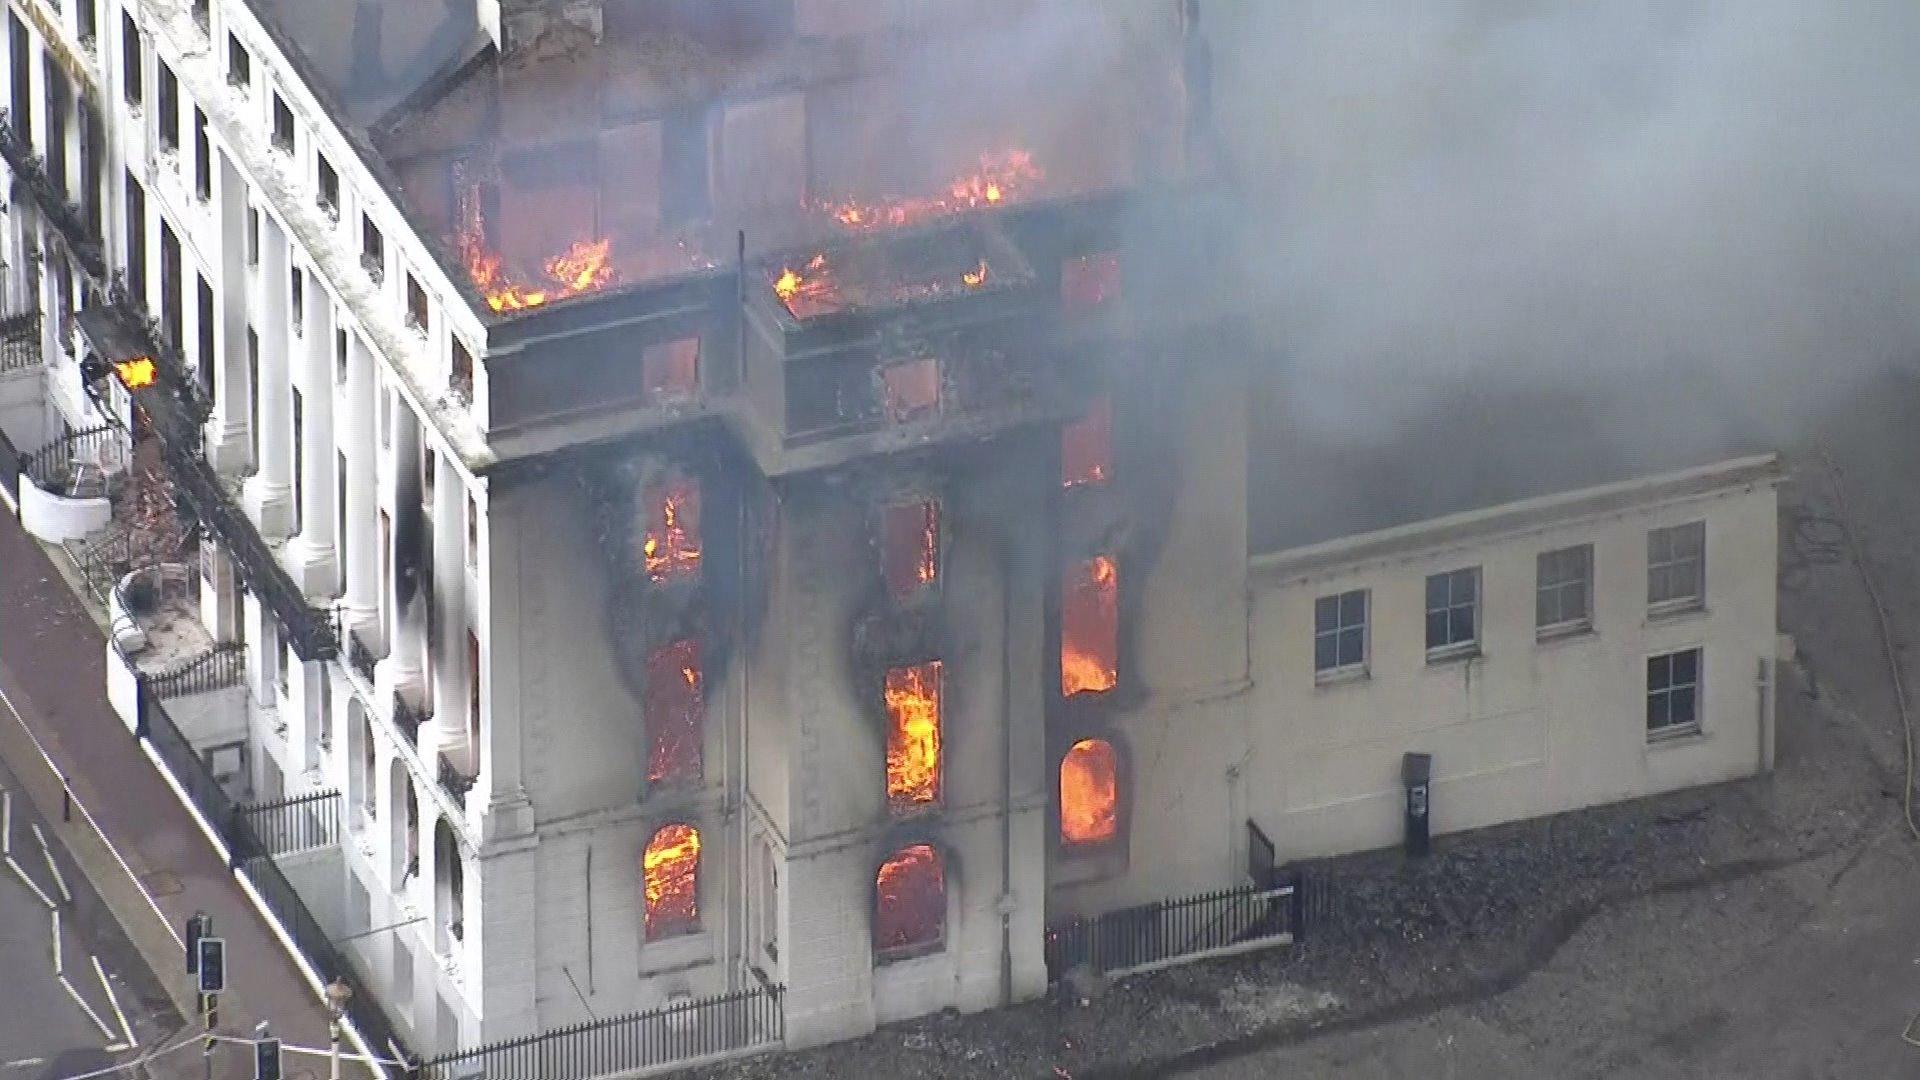 Dutzende Feuerwehrleute kämpfen gegen die Flammen Großeinsatz in brennendem Hotel